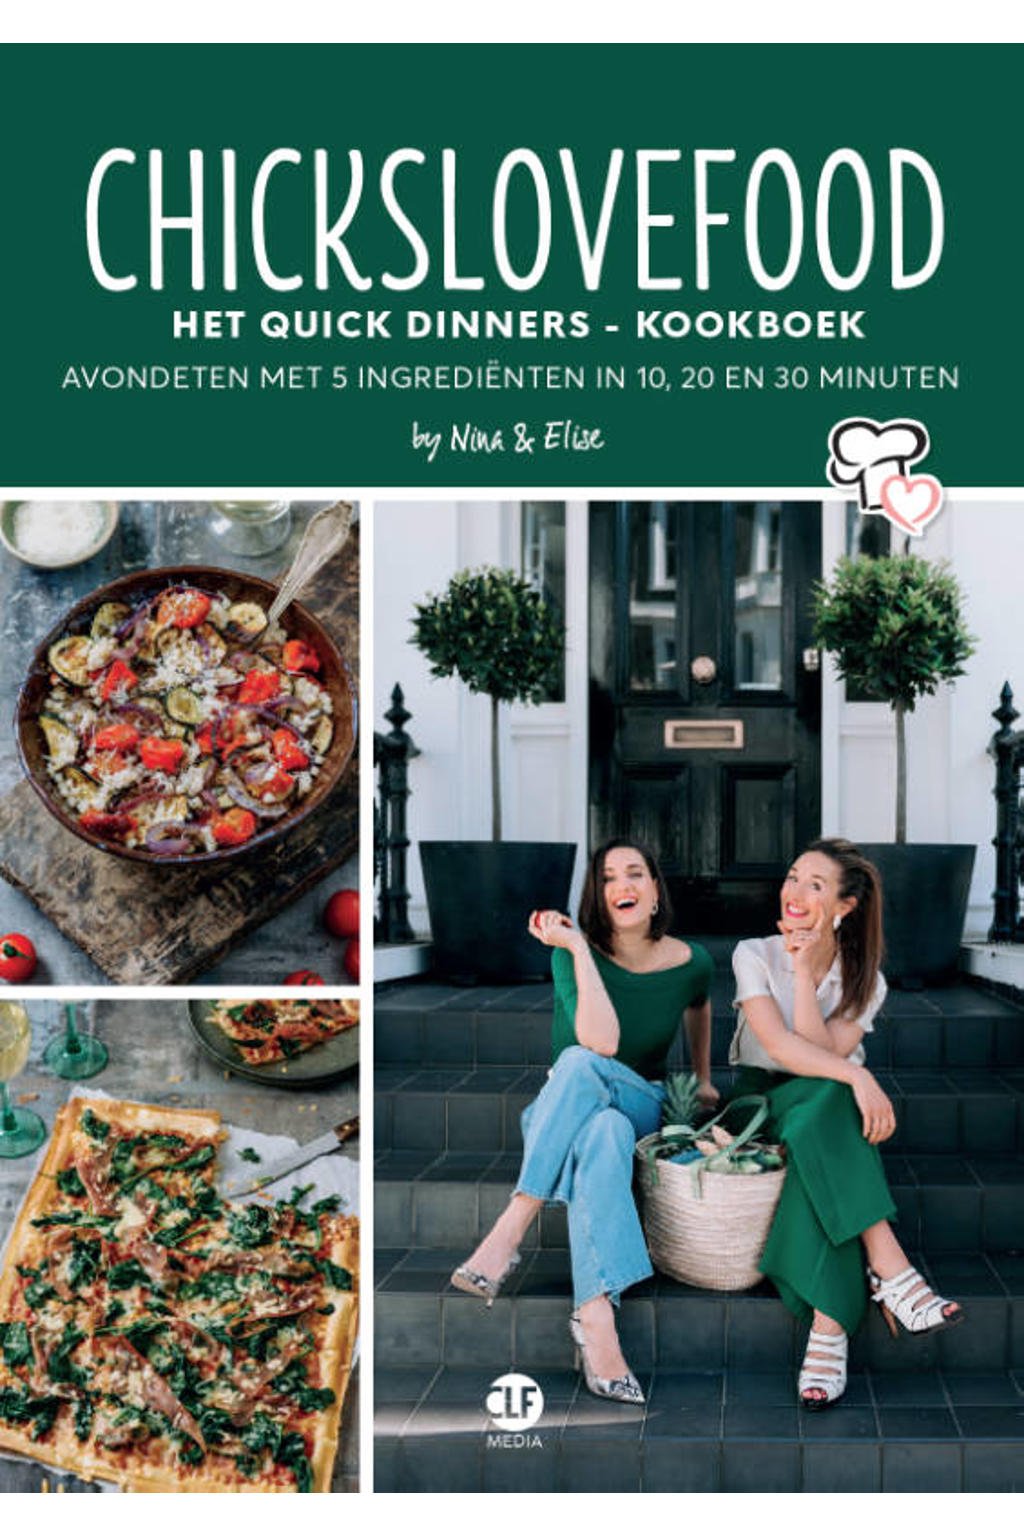 Chickslovefood: Chickslovefood: Het quick dinners - kookboek - Nina De Bruijn en Elise Gruppen-Schouwerwou